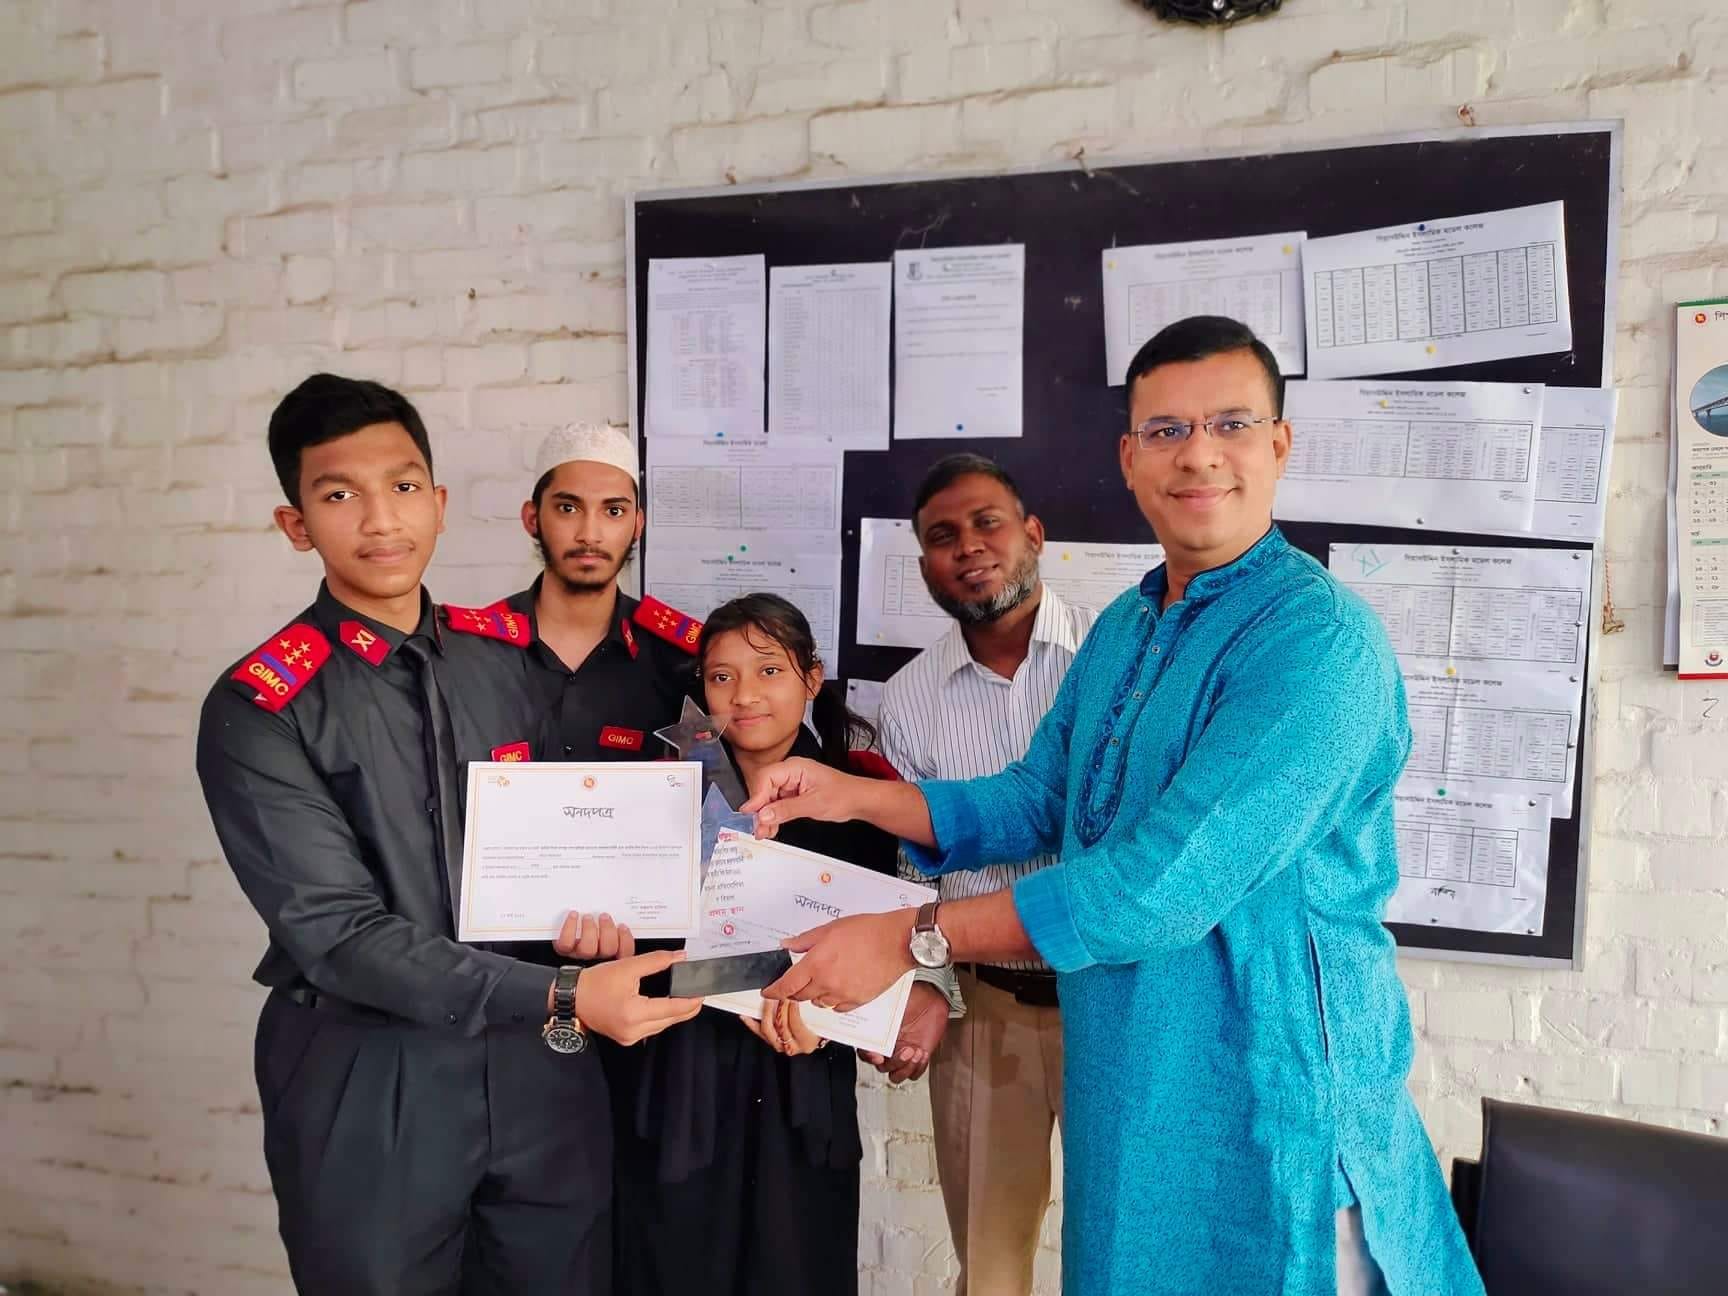  রচনা প্রতিযোগিতা গ বিভাগ প্রথম স্থান ও তৃতীয় স্থান অধিকার  - Giasuddin Islamic Model College